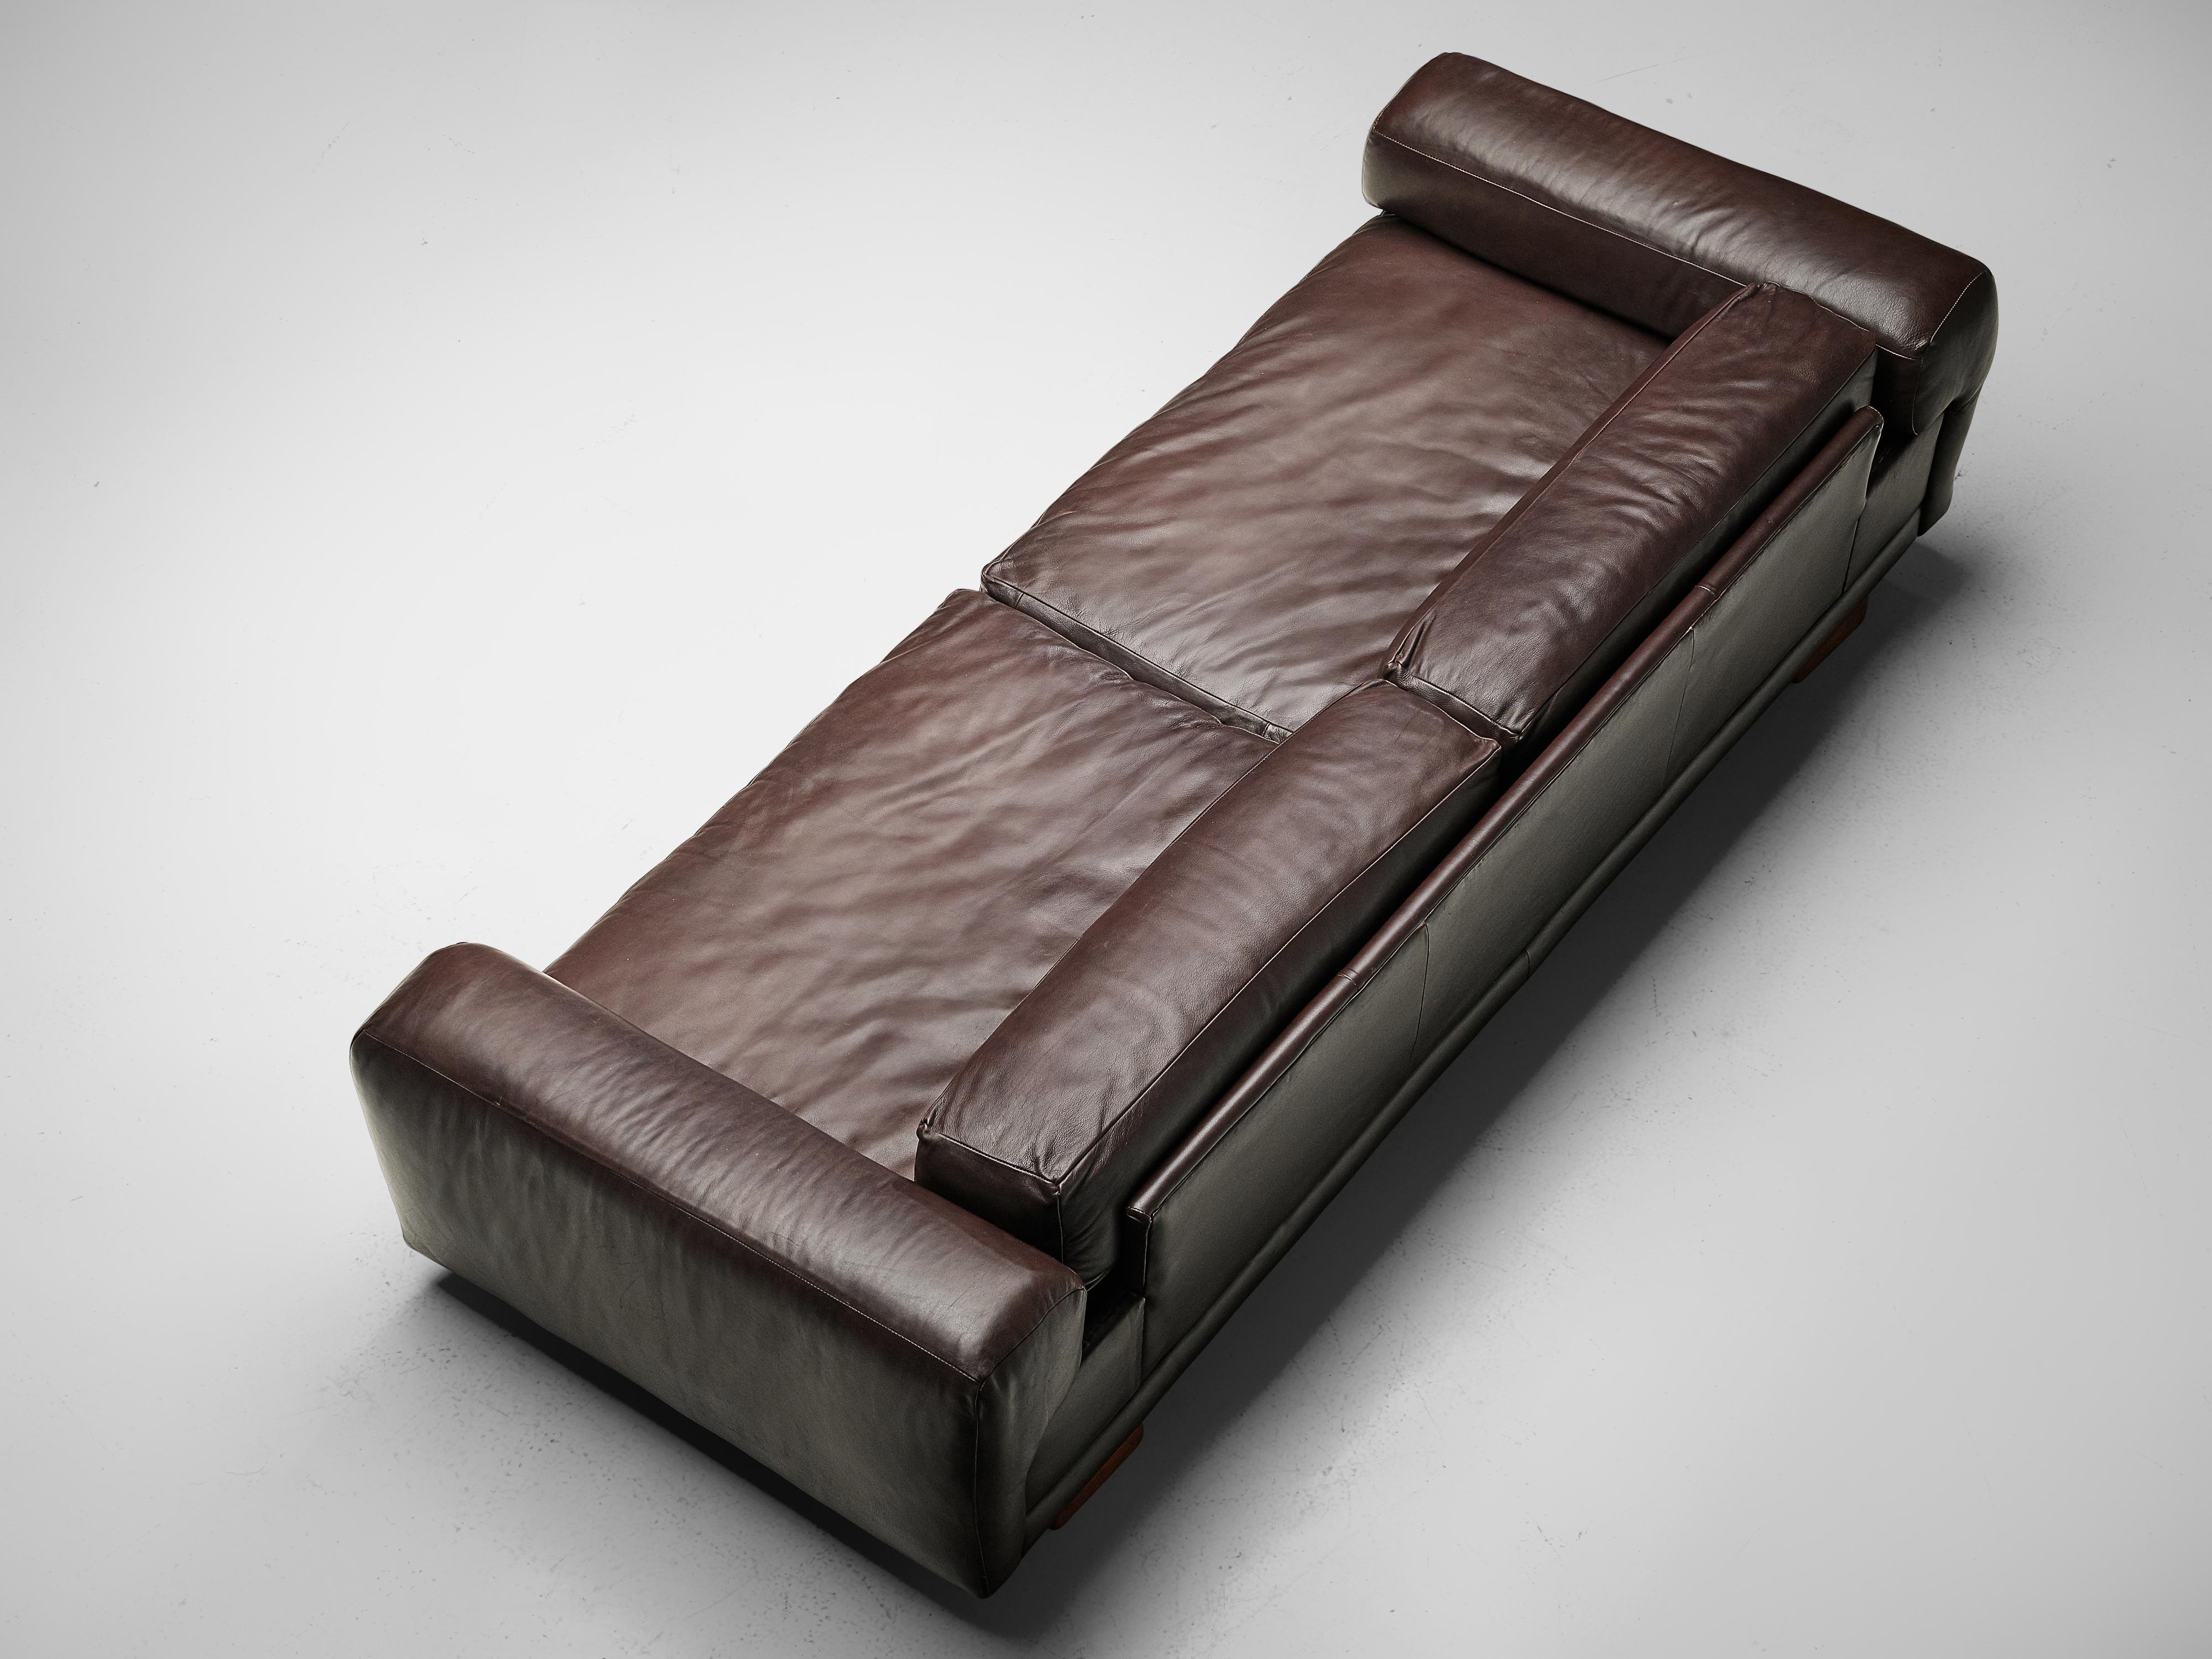 Metal Howard Keith Grand 'Diplomat' Sofa in Brown Leather